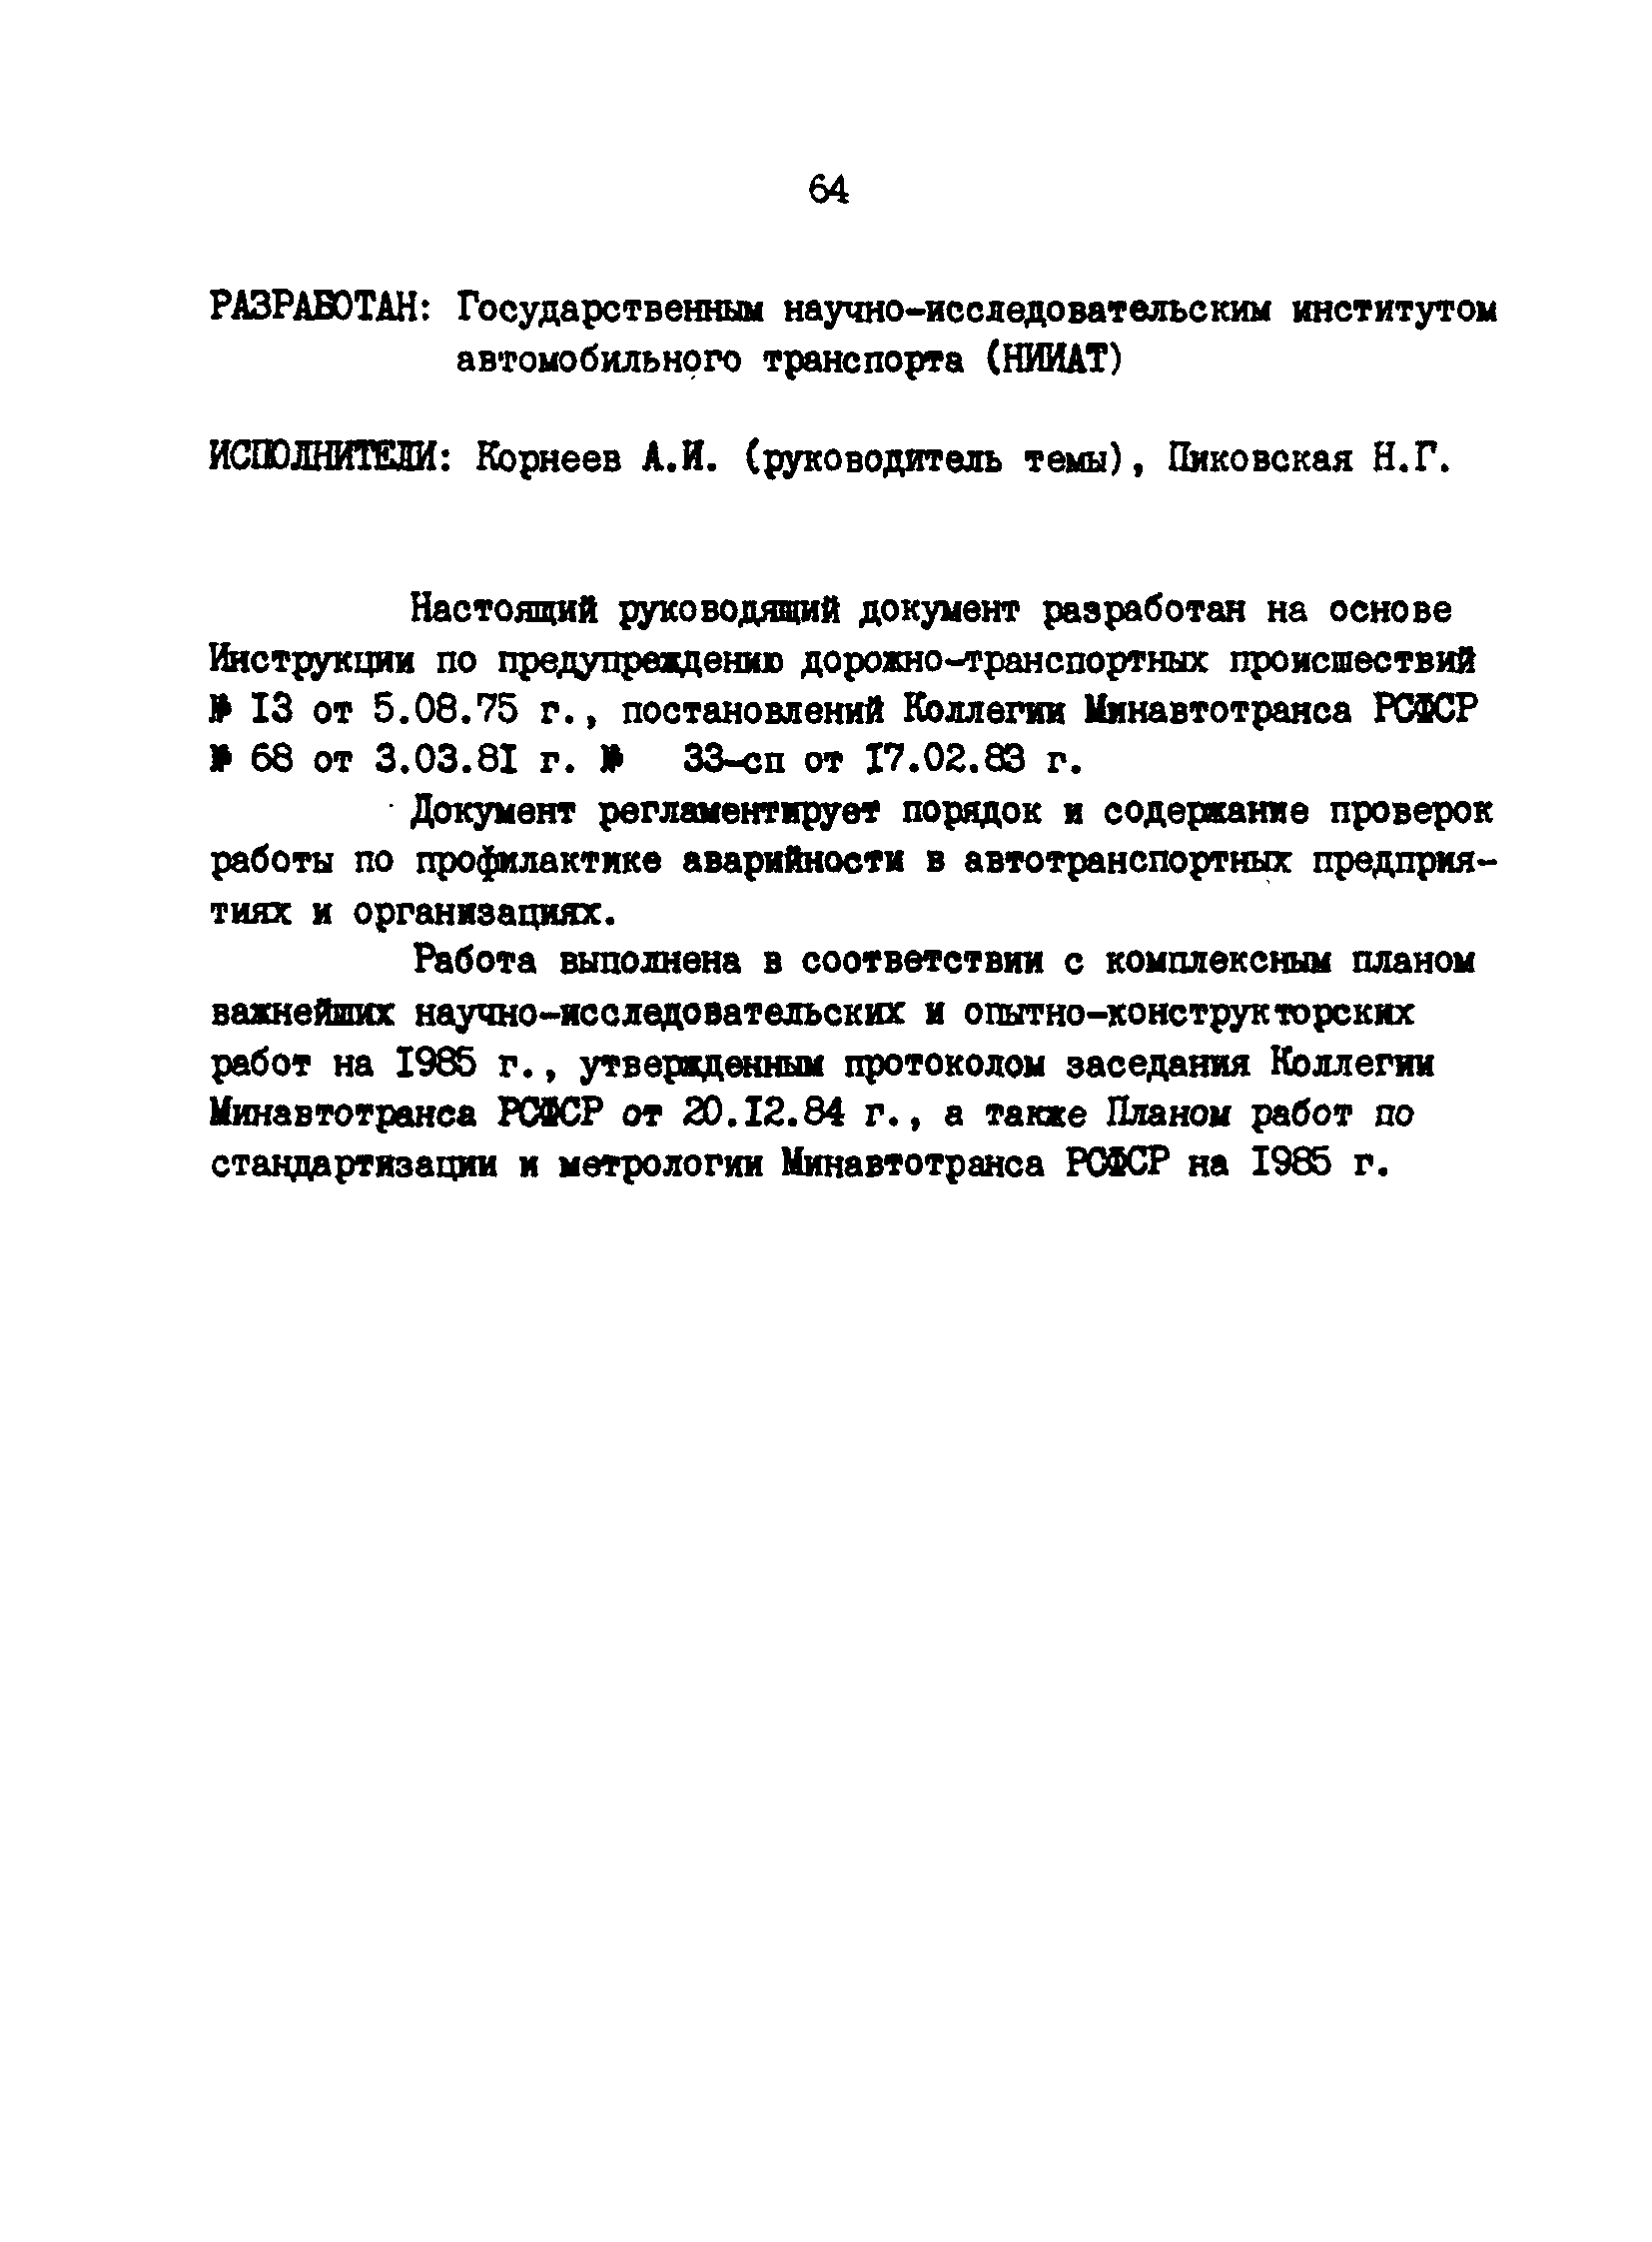 РД 200-РСФСР-12-0071-86-06